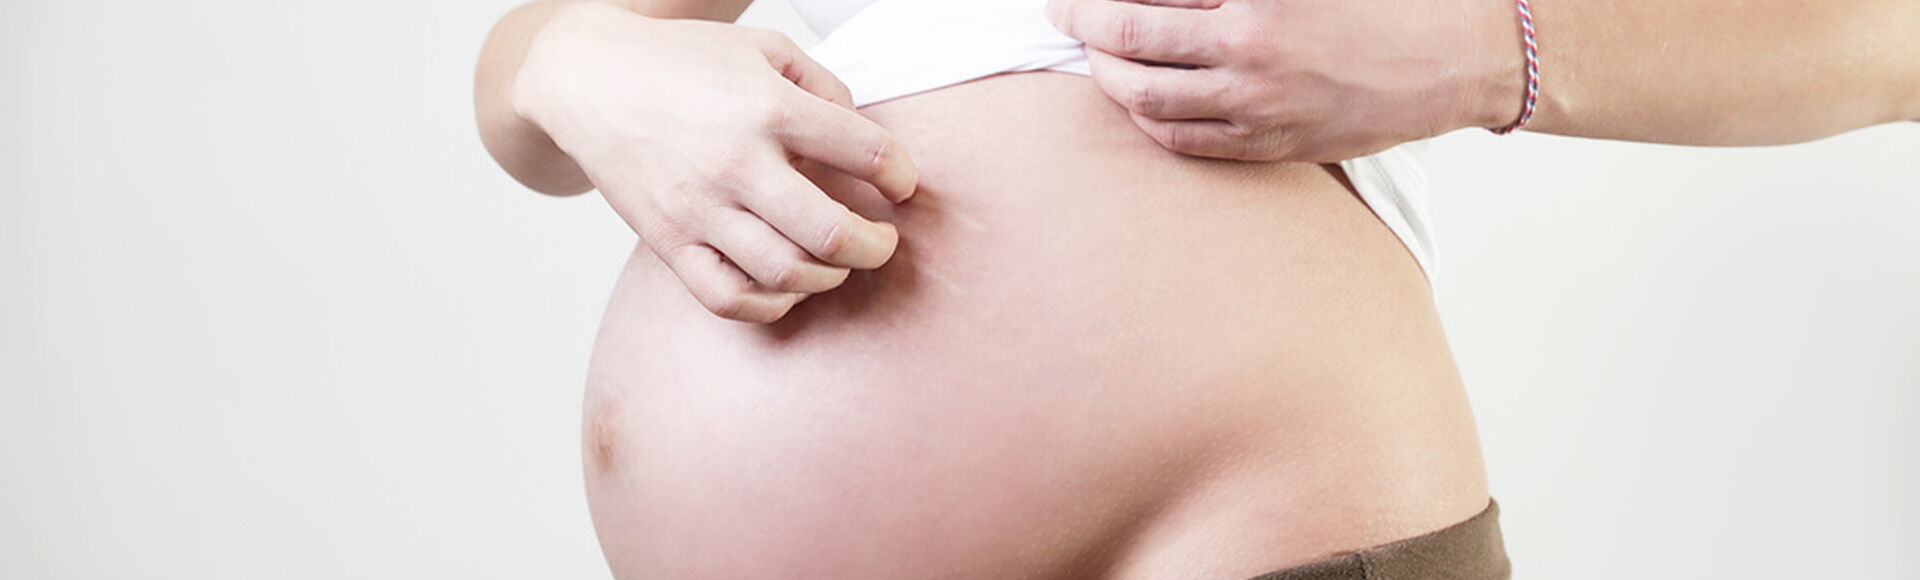 Exposição de varicela na gravidez